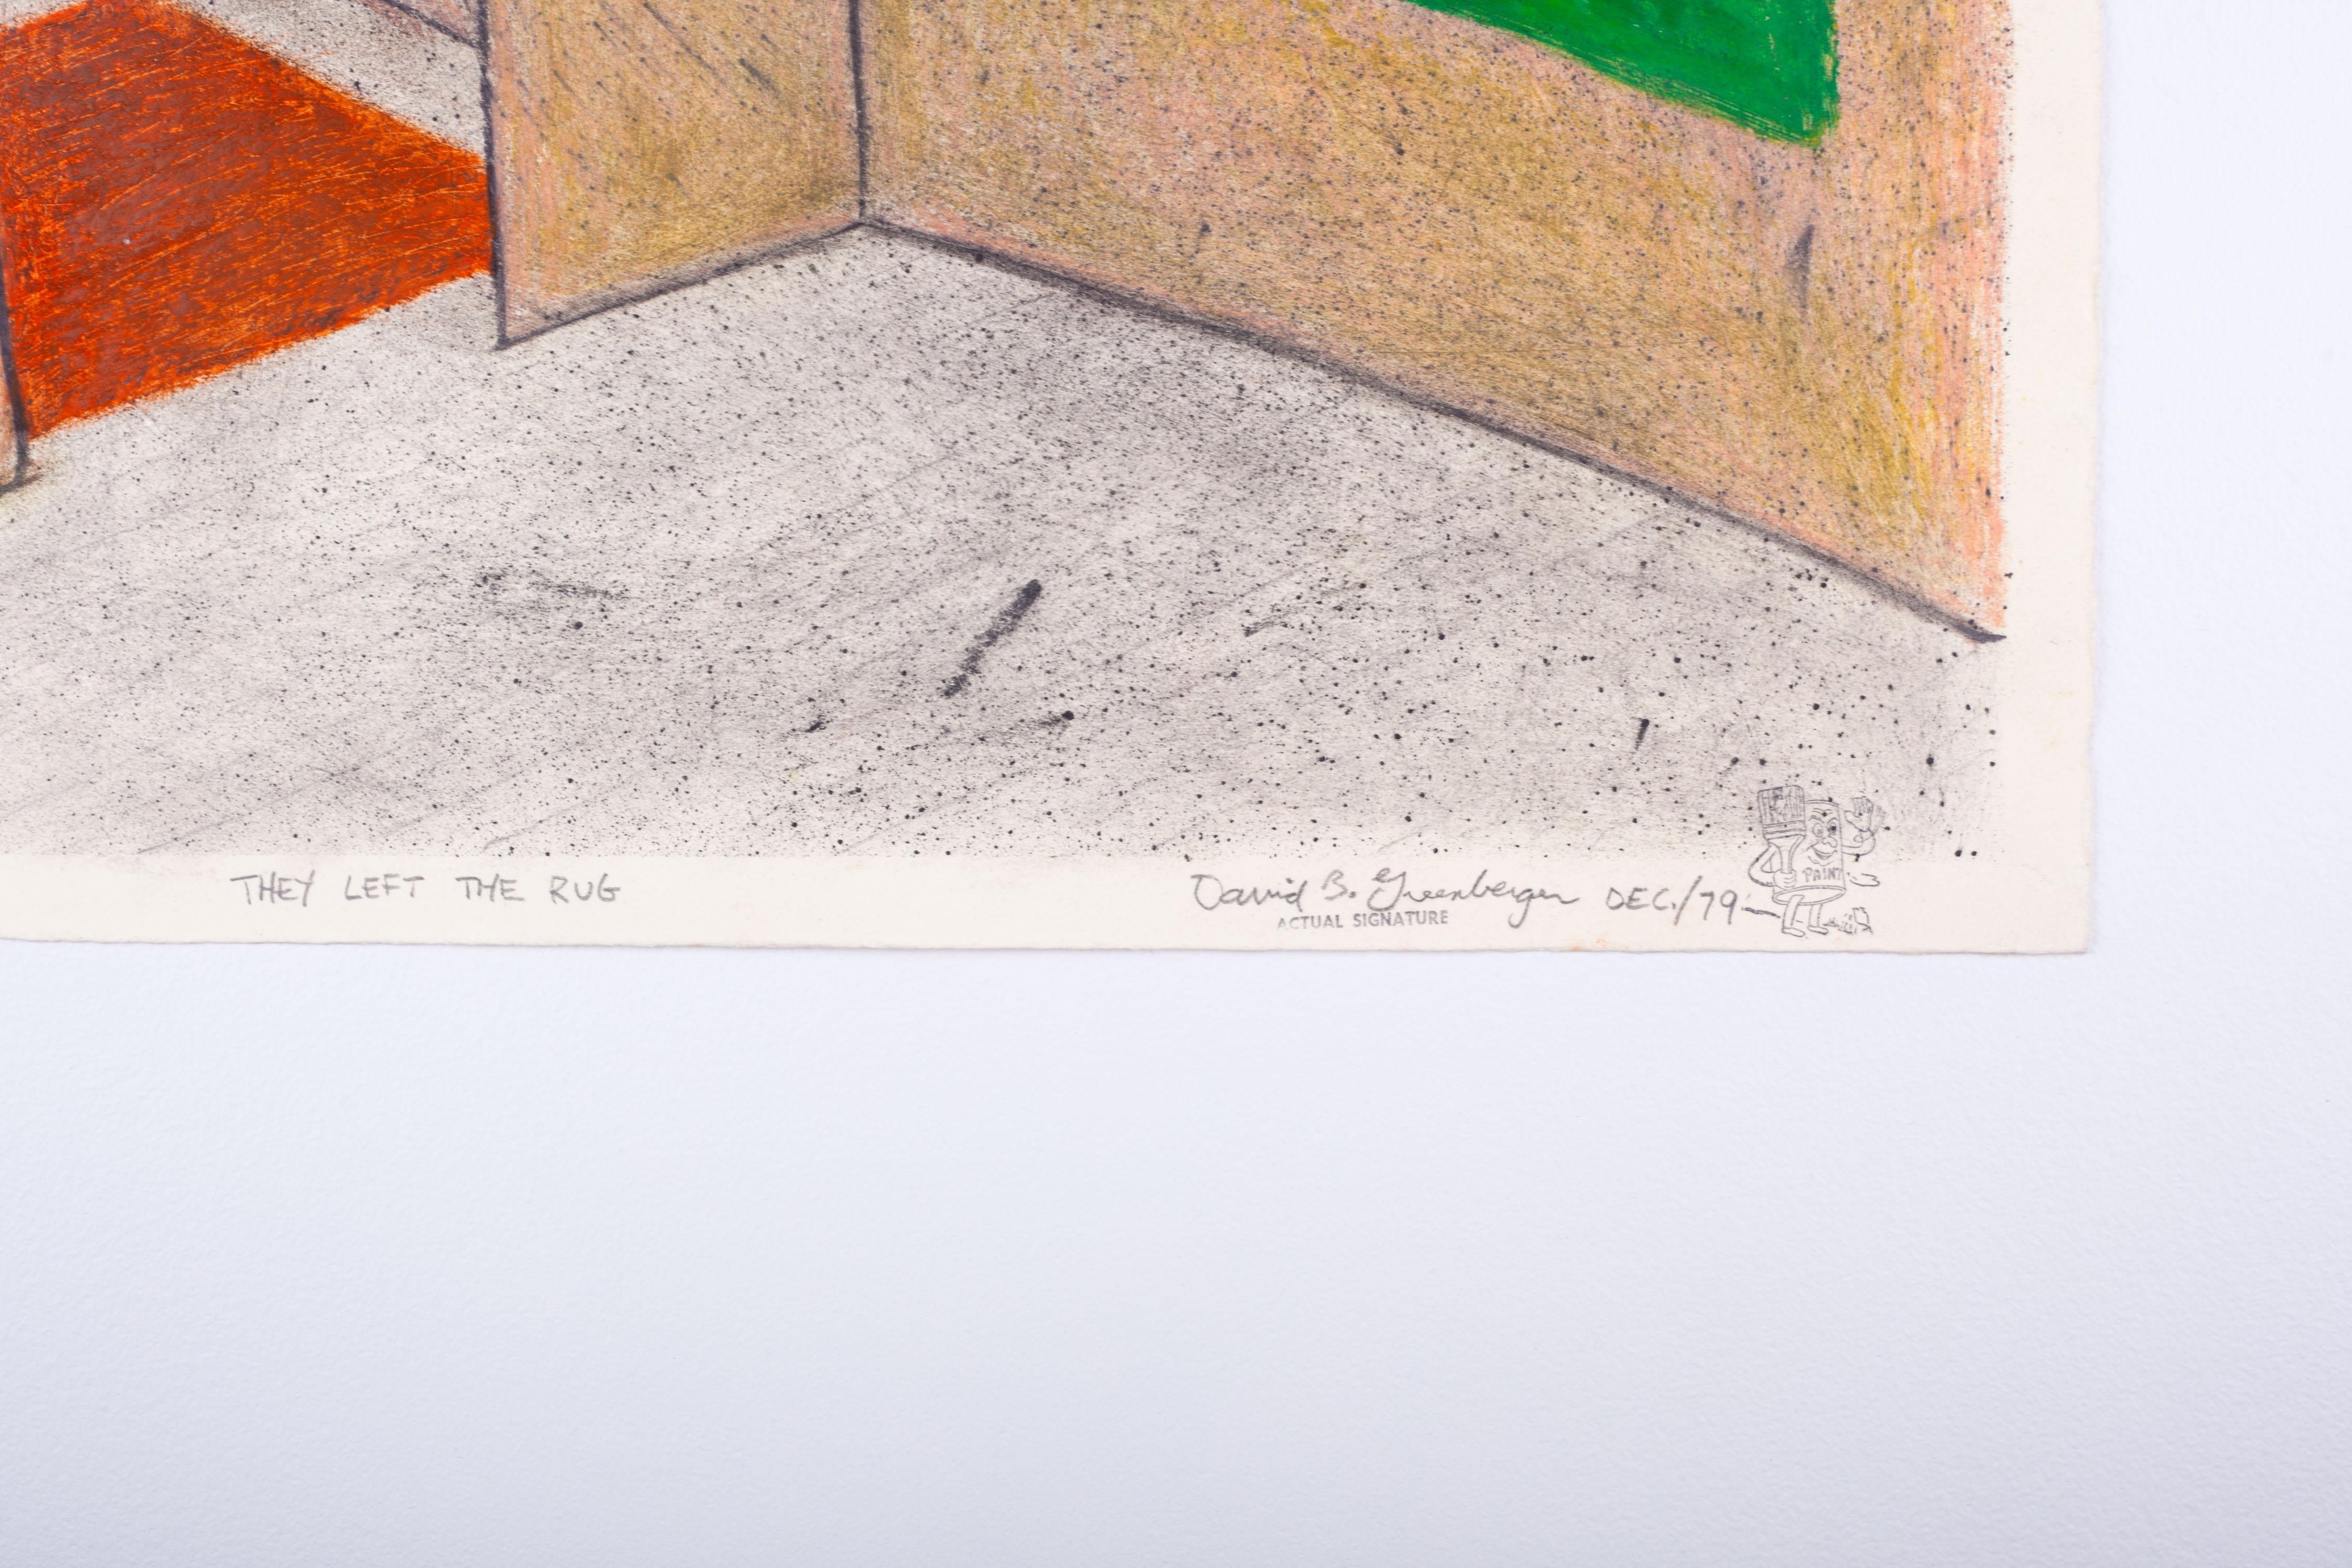 They Left The Rug von David Greenberger, signiert und datiert 1979. Pastell und Farbstift auf Papier.
Original-Pastellzeichnung eines leeren Innenraums: minimale Komposition aus einfachen geometrischen Formen, die mit Ölpastellkreiden reich